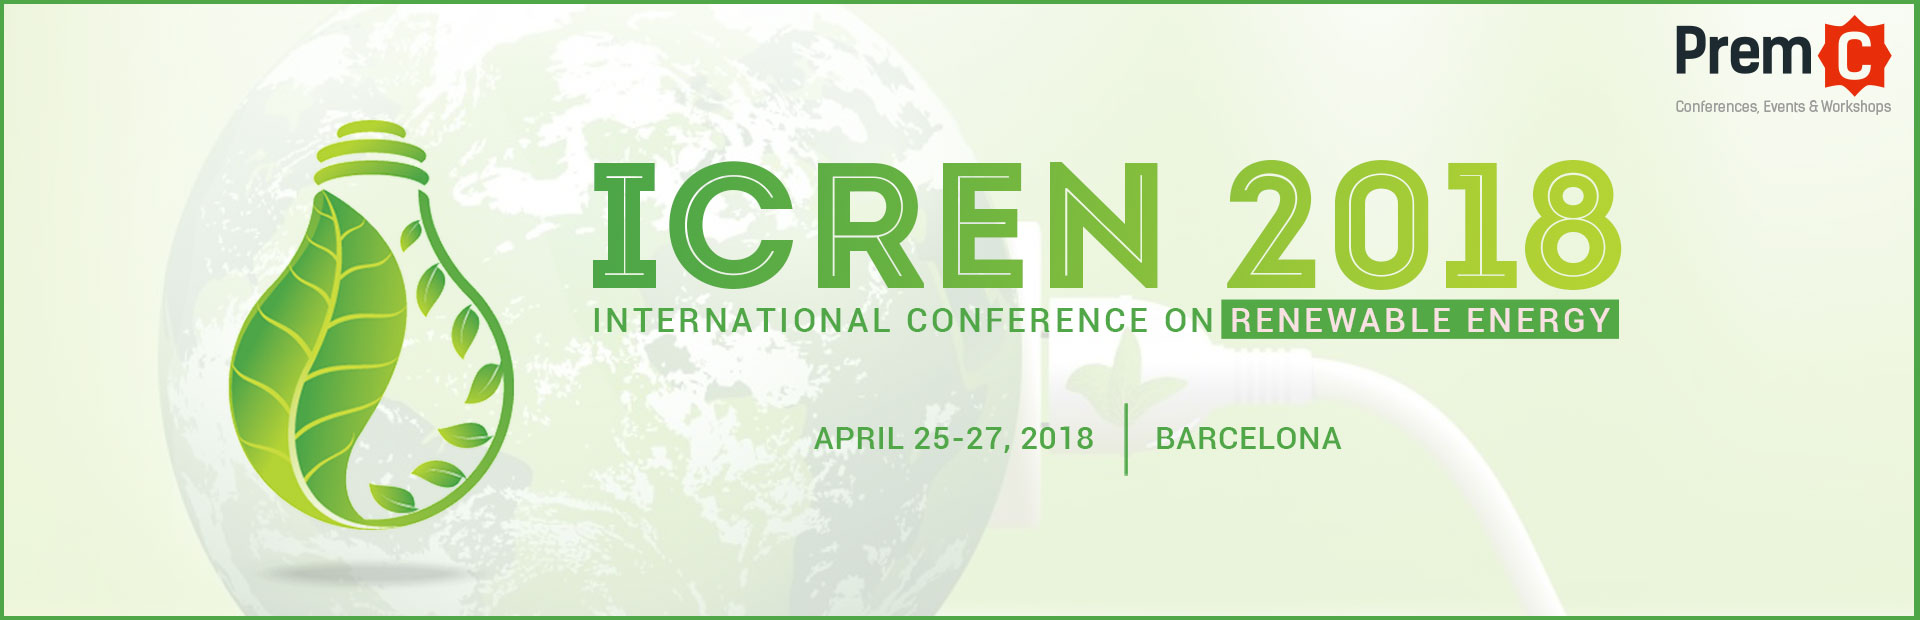 International Conference on Renewable Energy - ICREN 2018